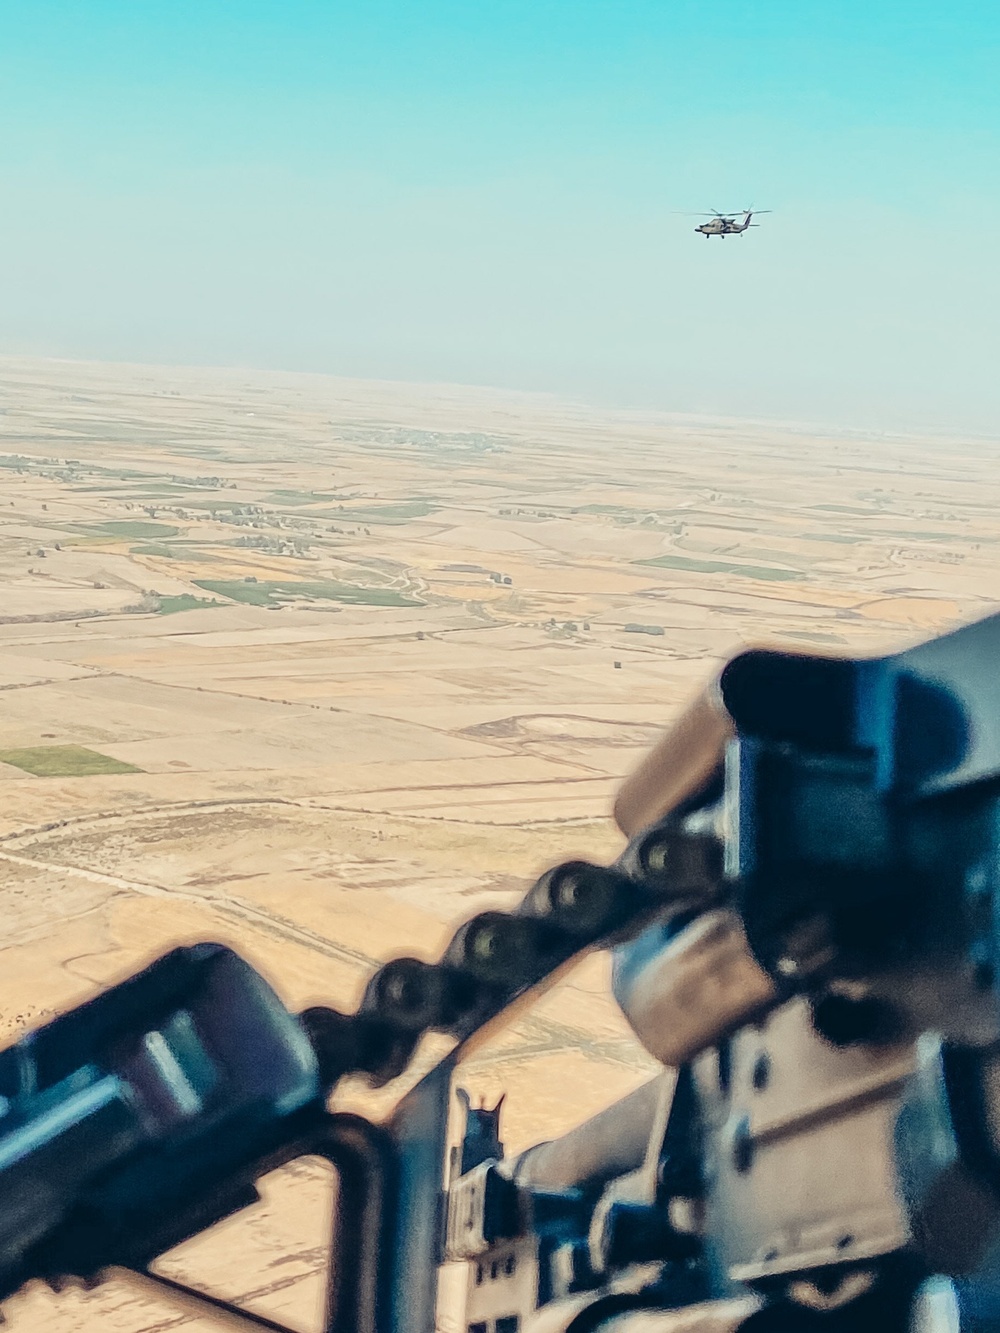 Black Hawk flight over the desert